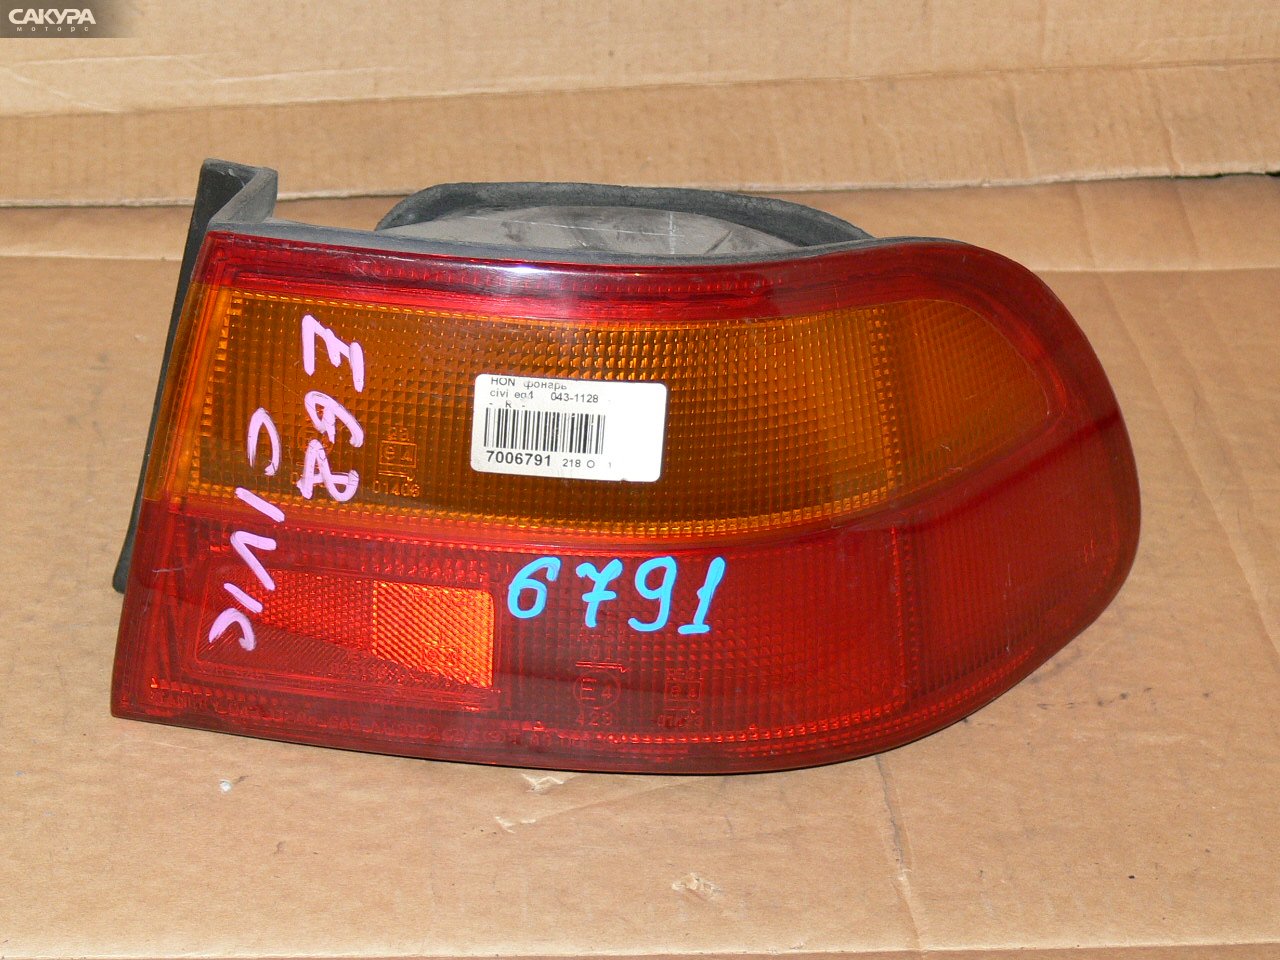 Фонарь стоп-сигнала правый Honda Civic EG4 043-1128: купить в Сакура Иркутск.